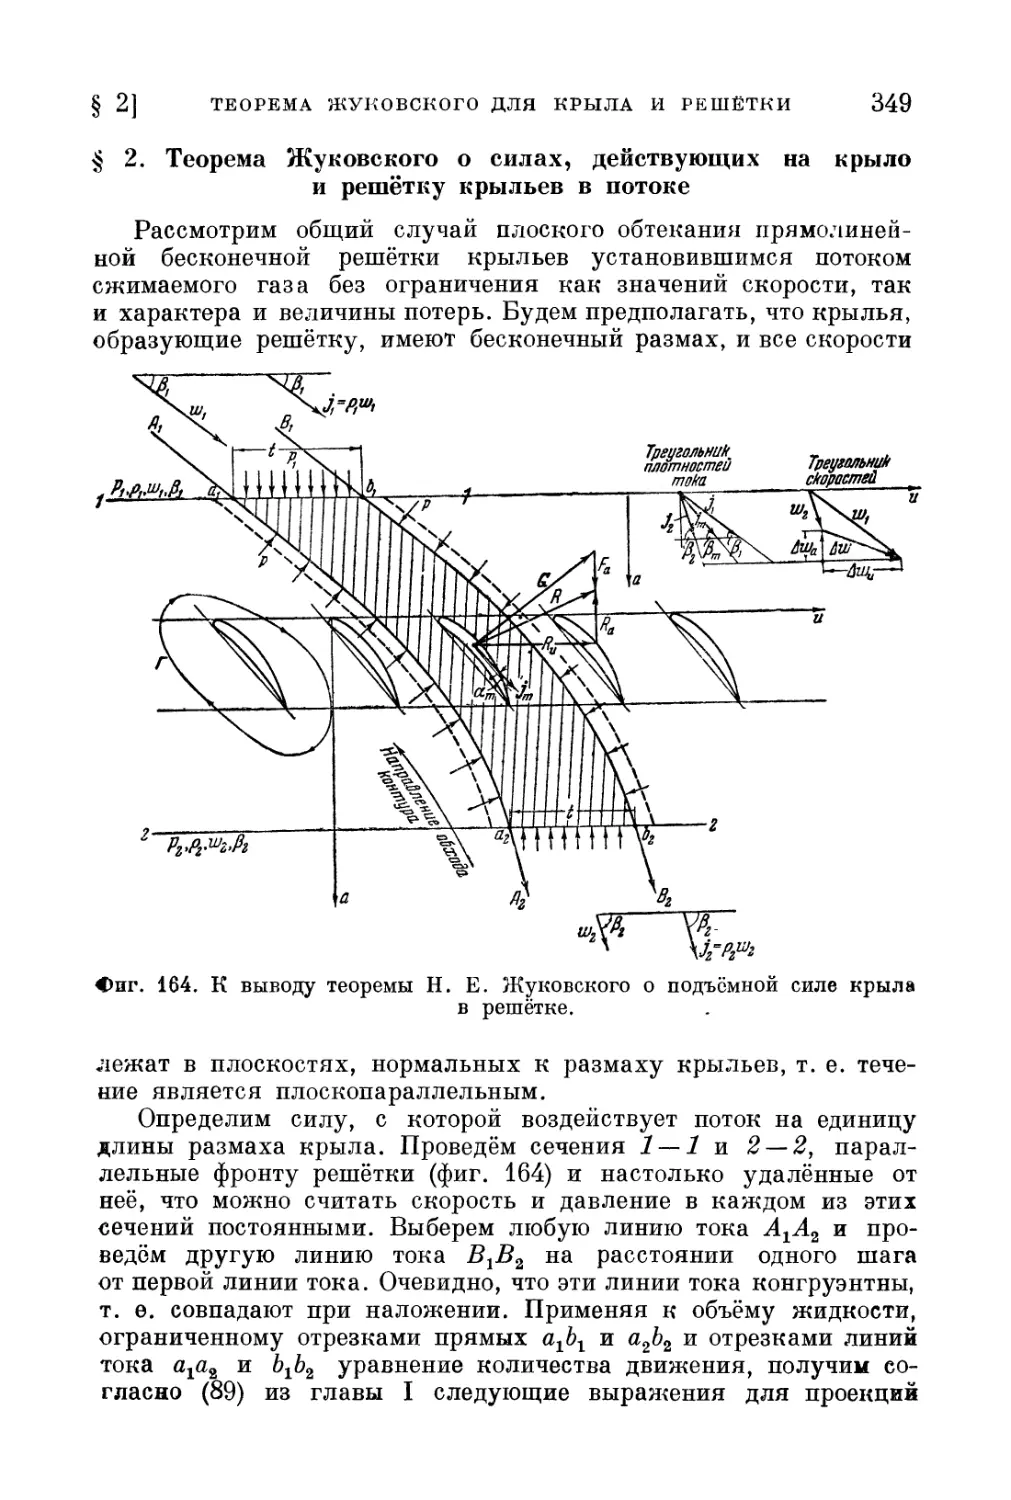 § 2. Теорема Жуковского о силах, действующих на крыло и решётку крыльев в потоке